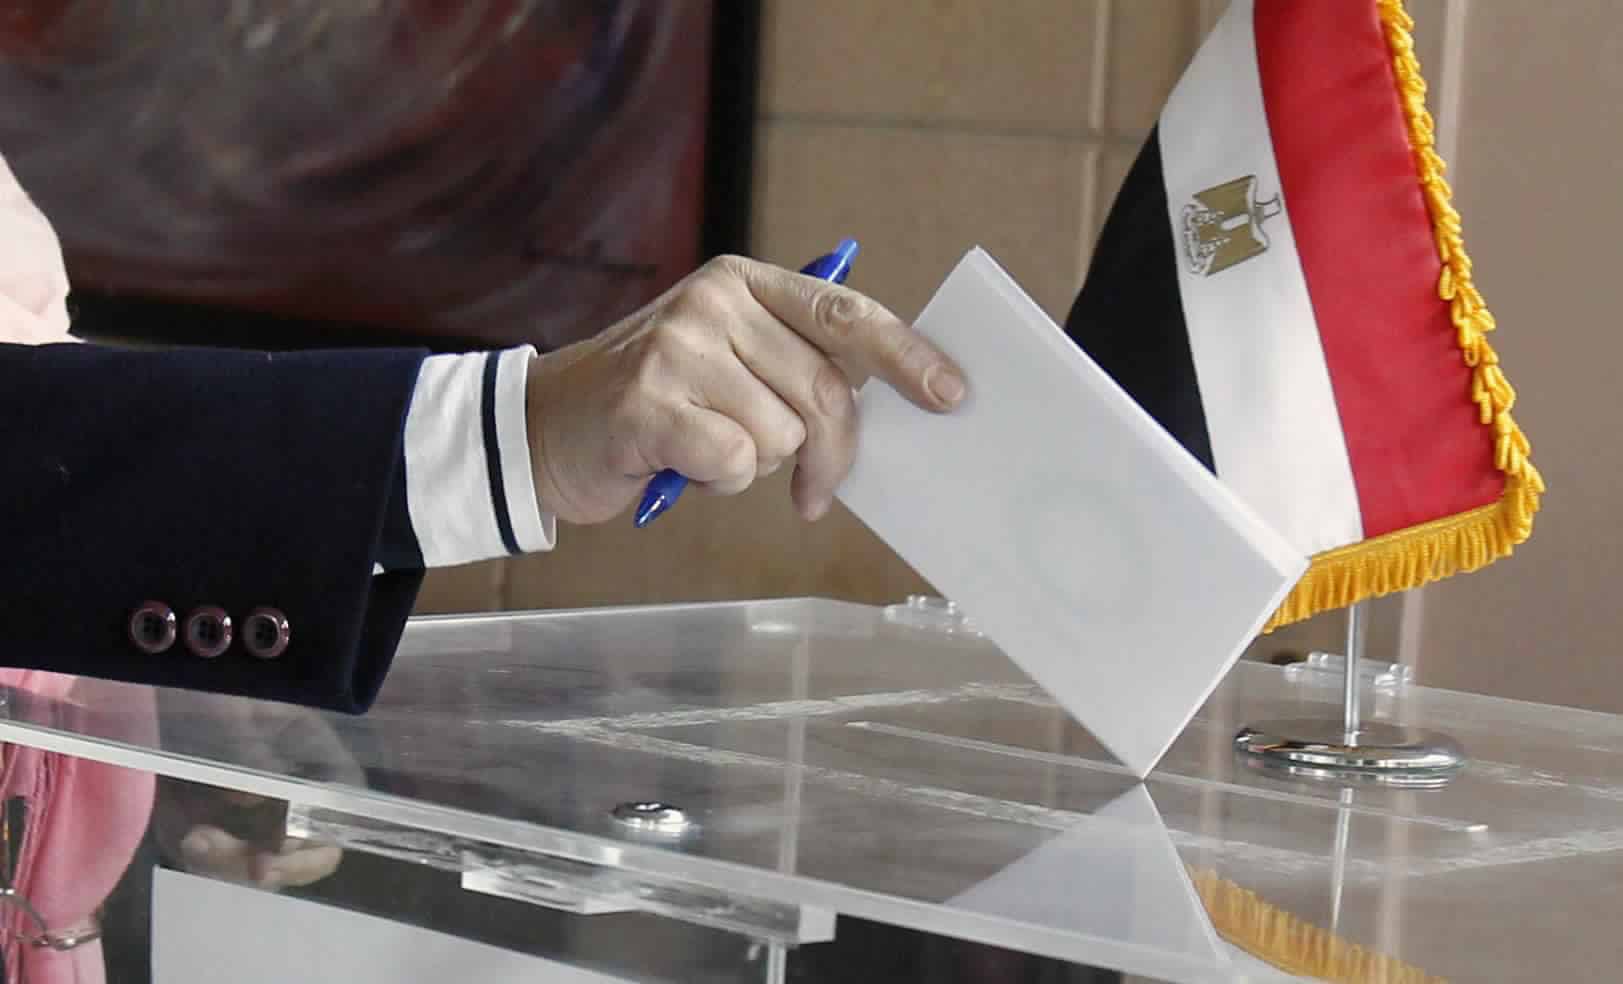 تحليل لتغطية "الأهرام الورقي" لأخر أيام الدعاية الانتخابية